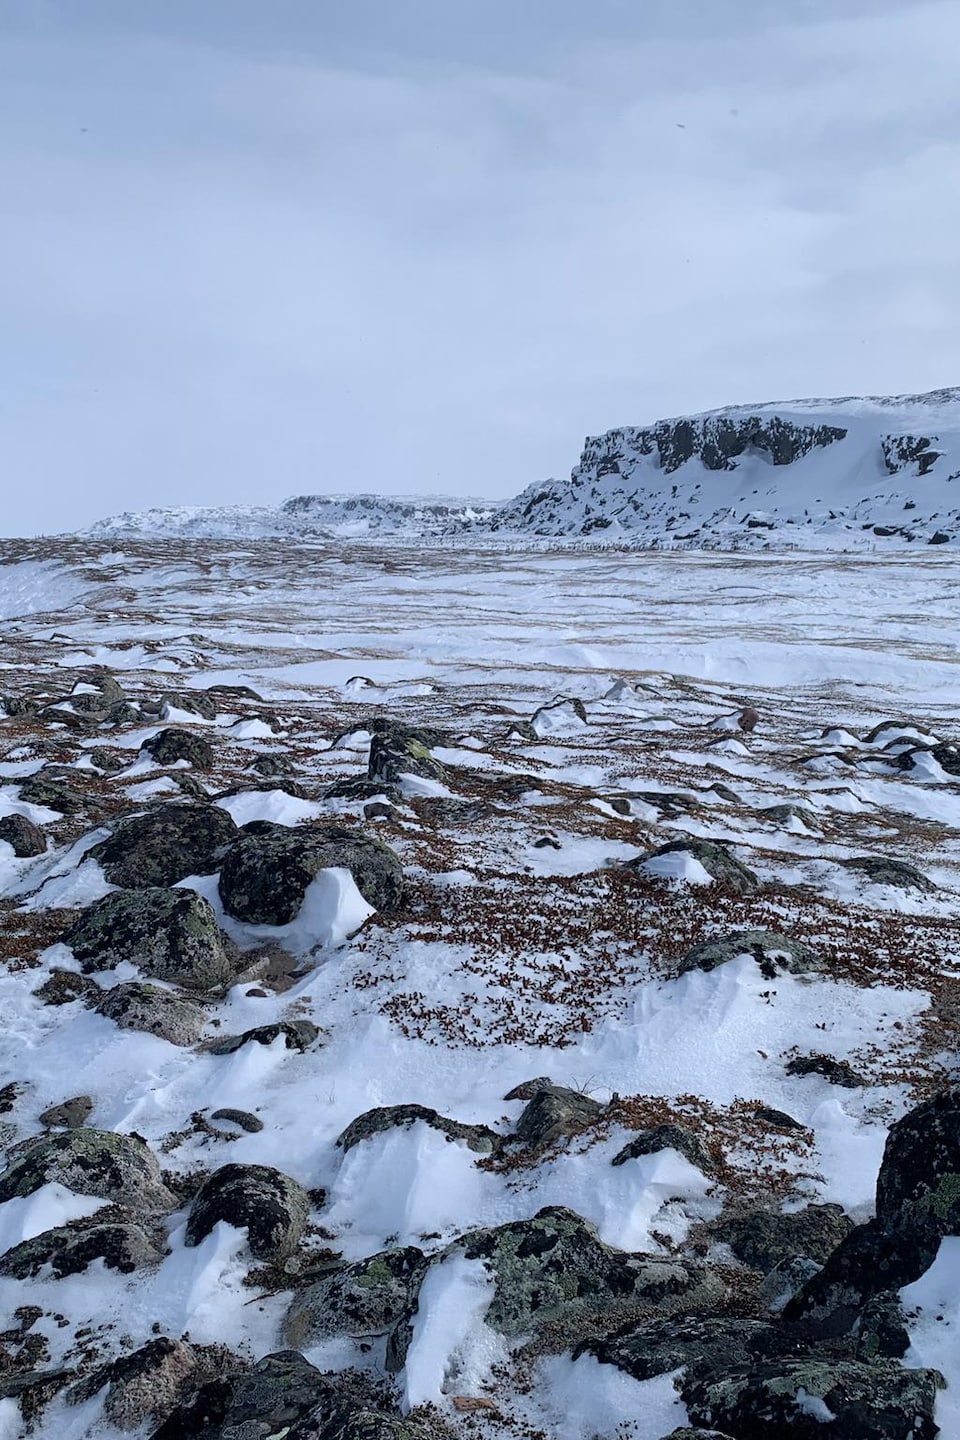 Un paysage de pierre, de neige et de glace.